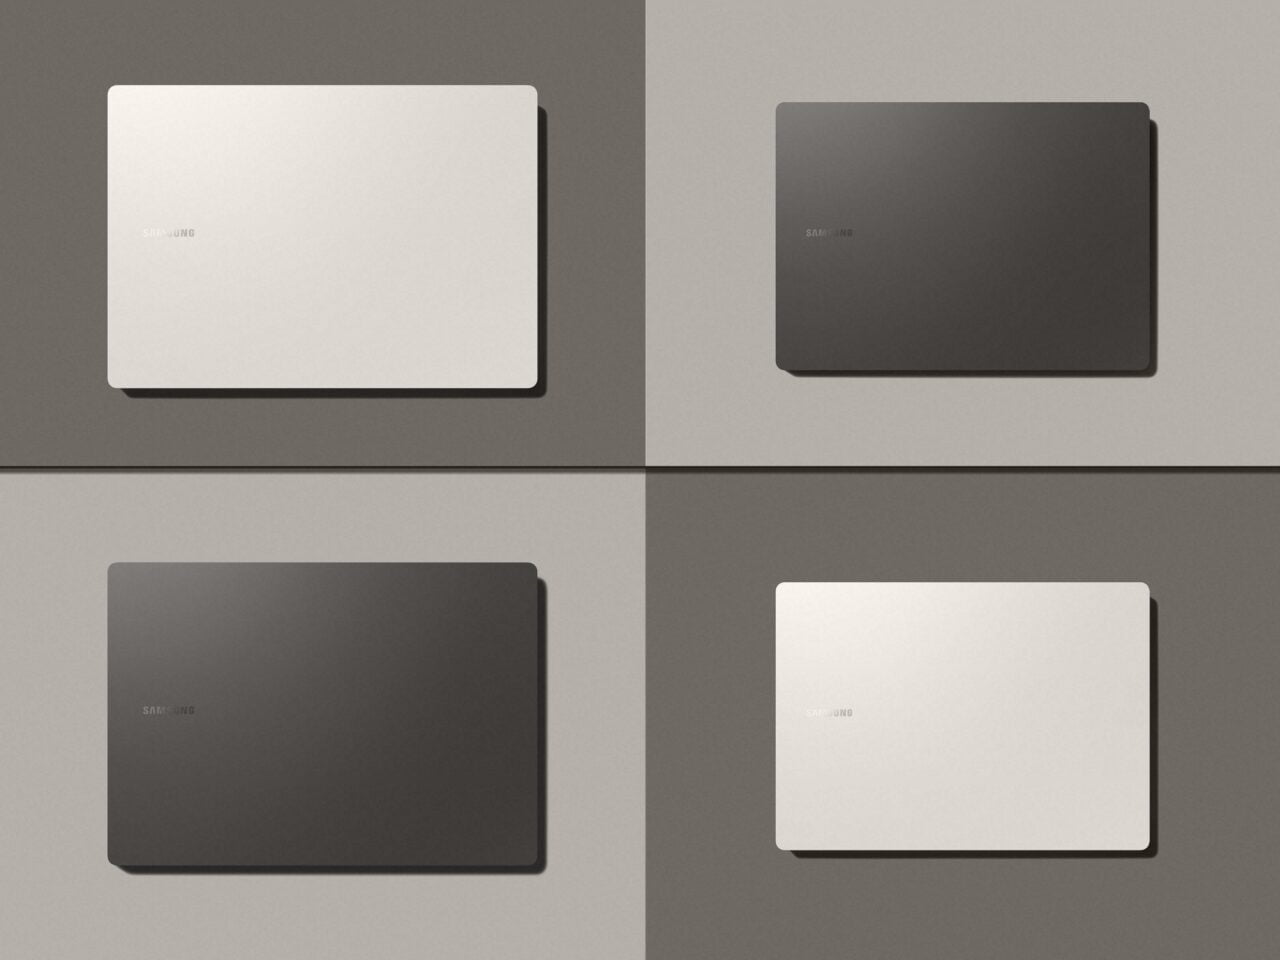 Cztery laptopy marki Samsung, z których dwa są białe, a dwa czarne, na jednolitym tle szarości.